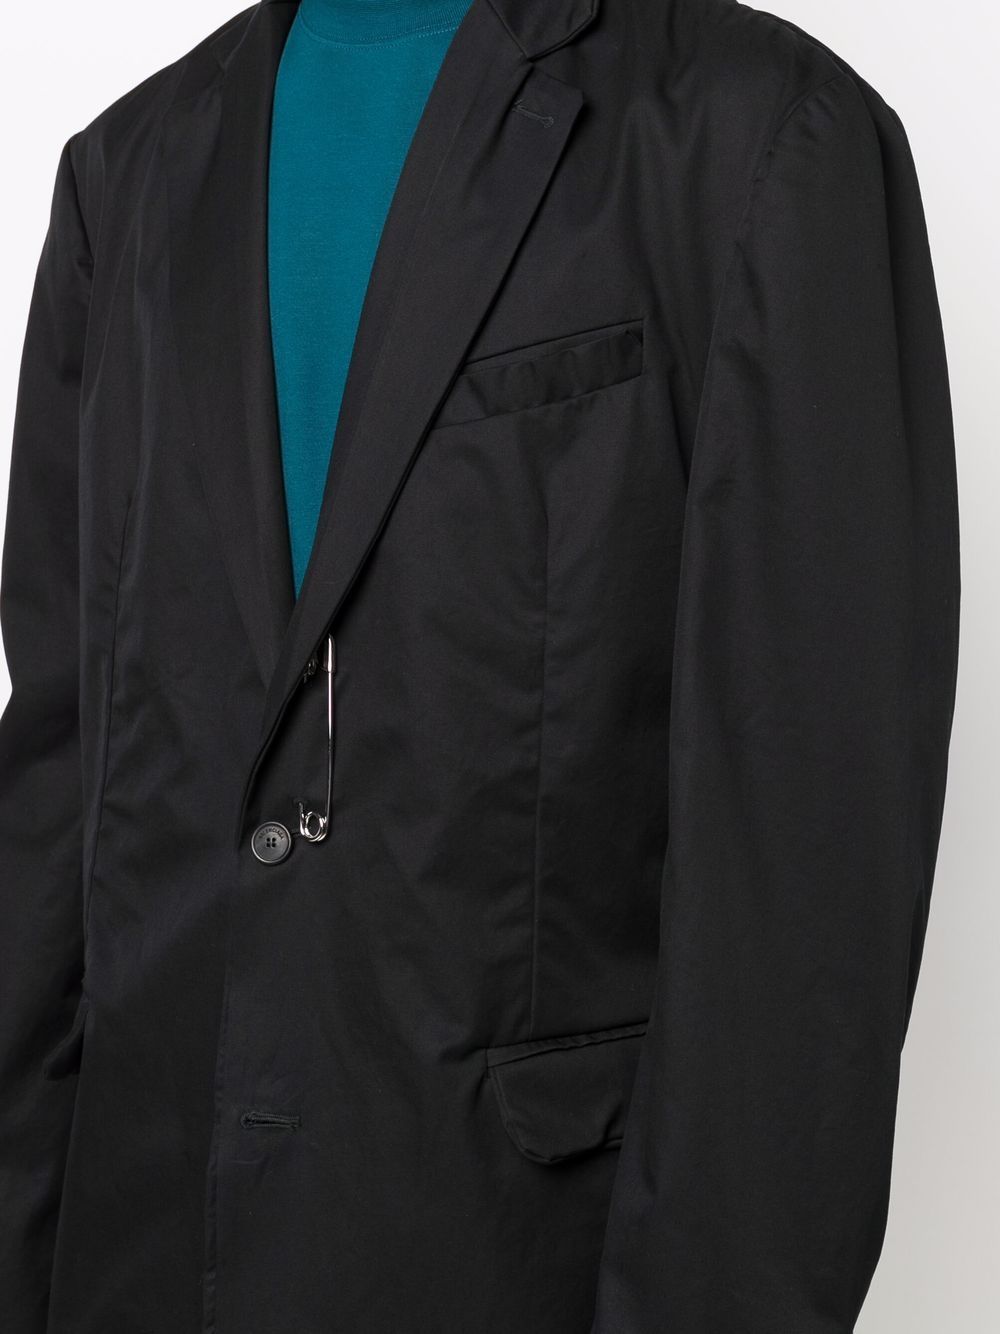 BALENCIAGA Handstitch-style Oversized Jacket Black - MAISONDEFASHION.COM